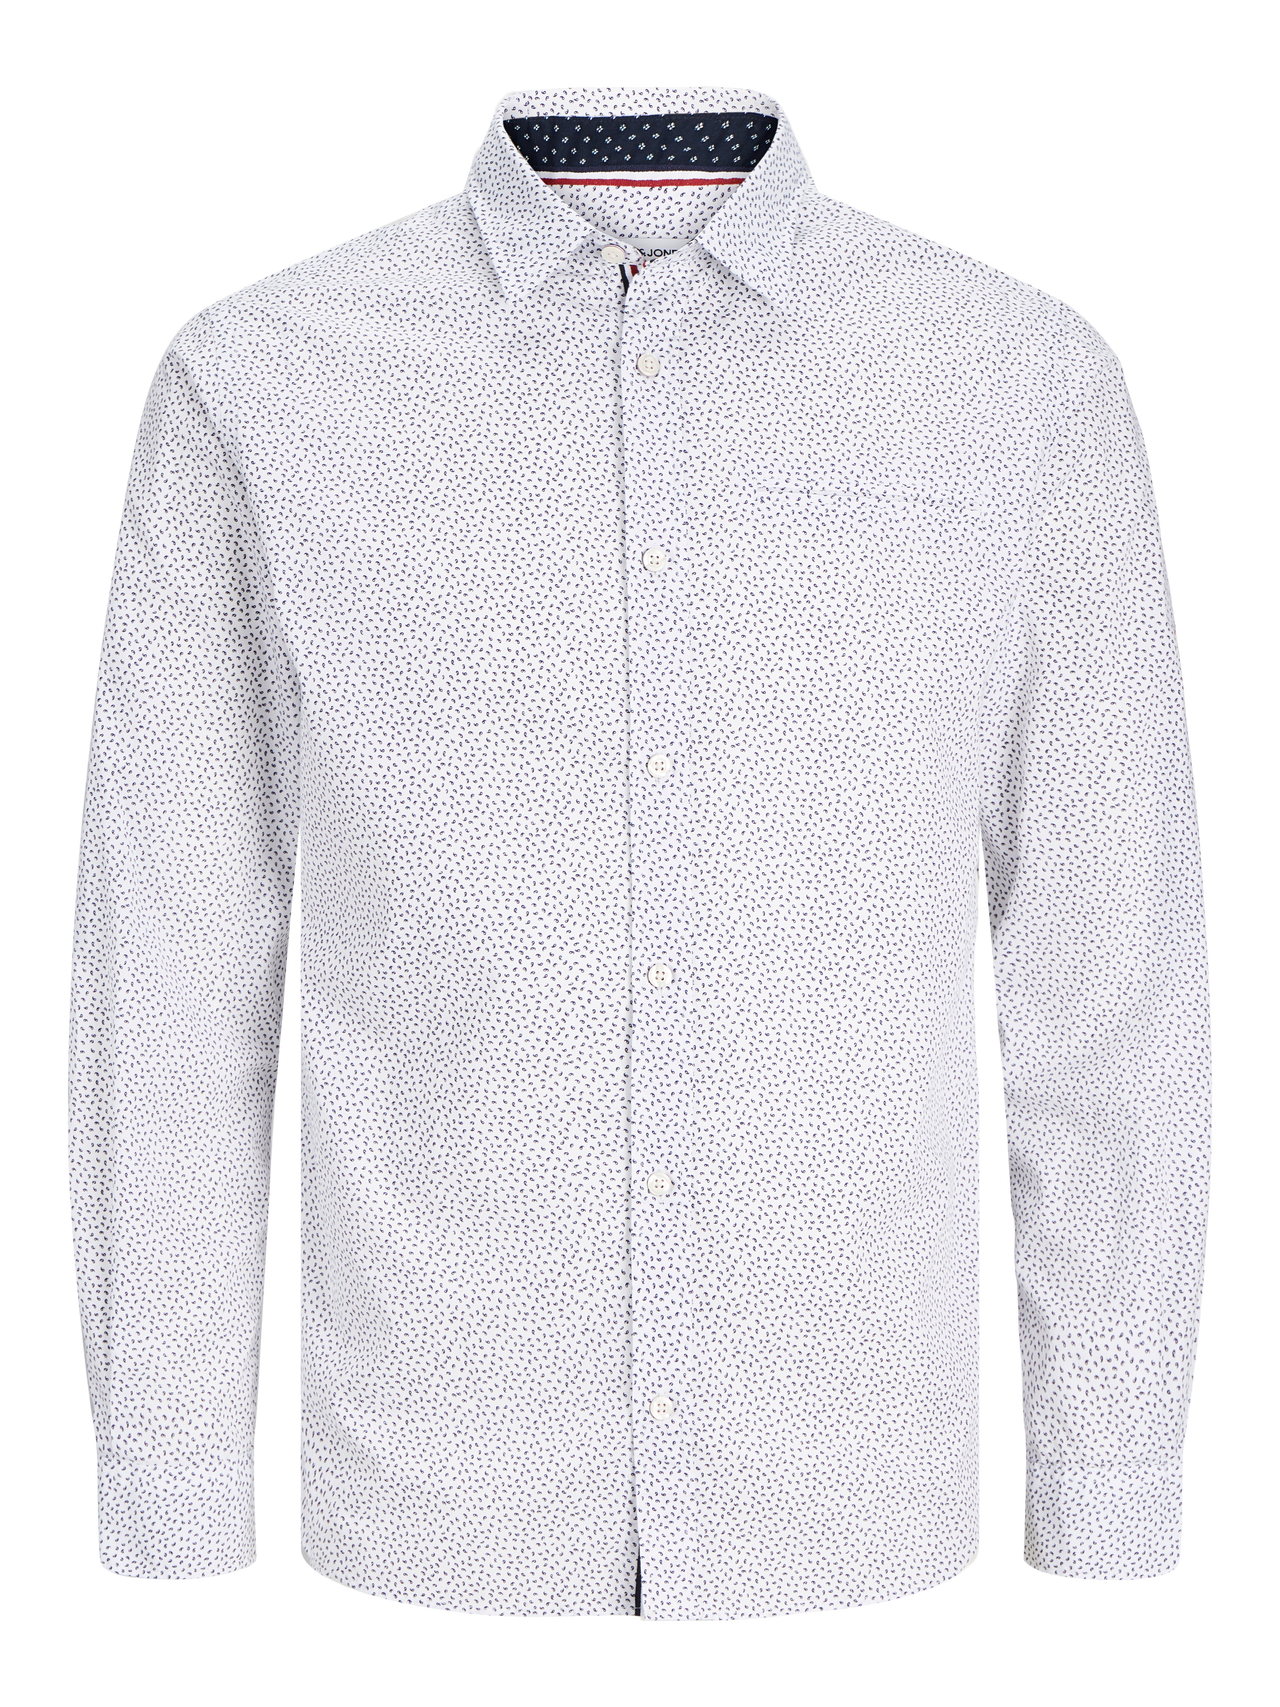 Jack & Jones Slim Fit Oficialūs marškiniai -Bright White - 12235969